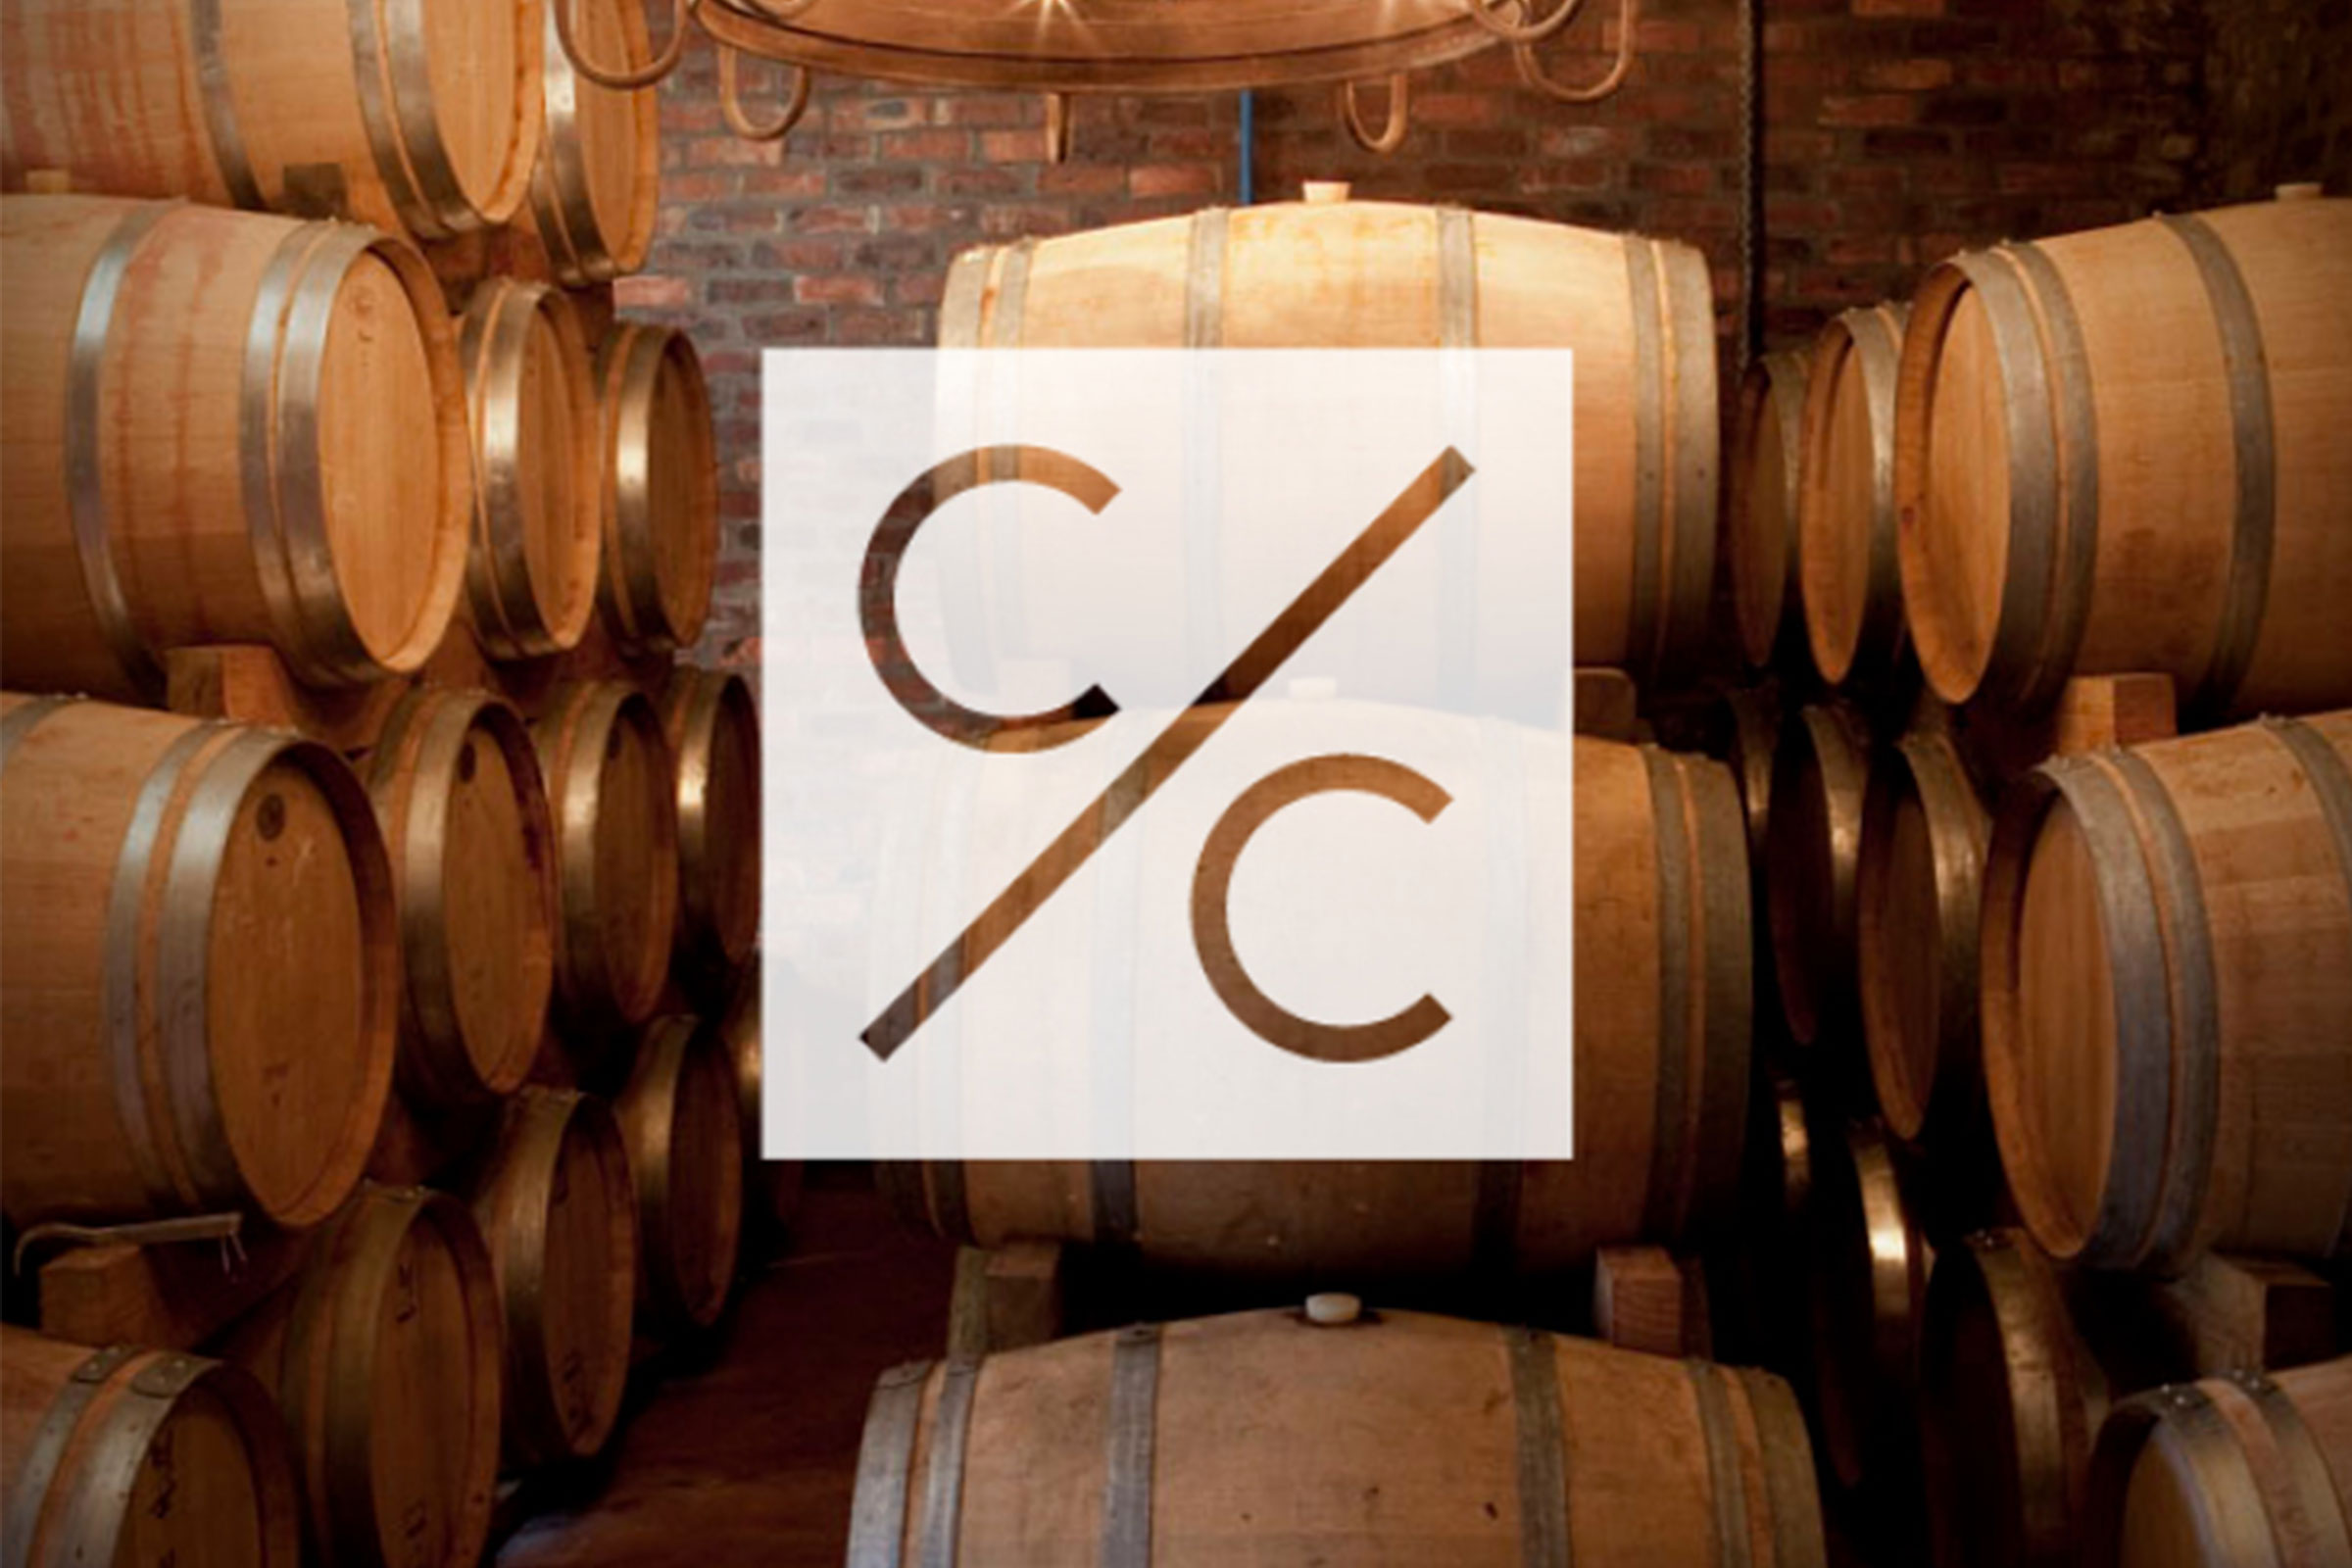 Cape Classics wine barrels